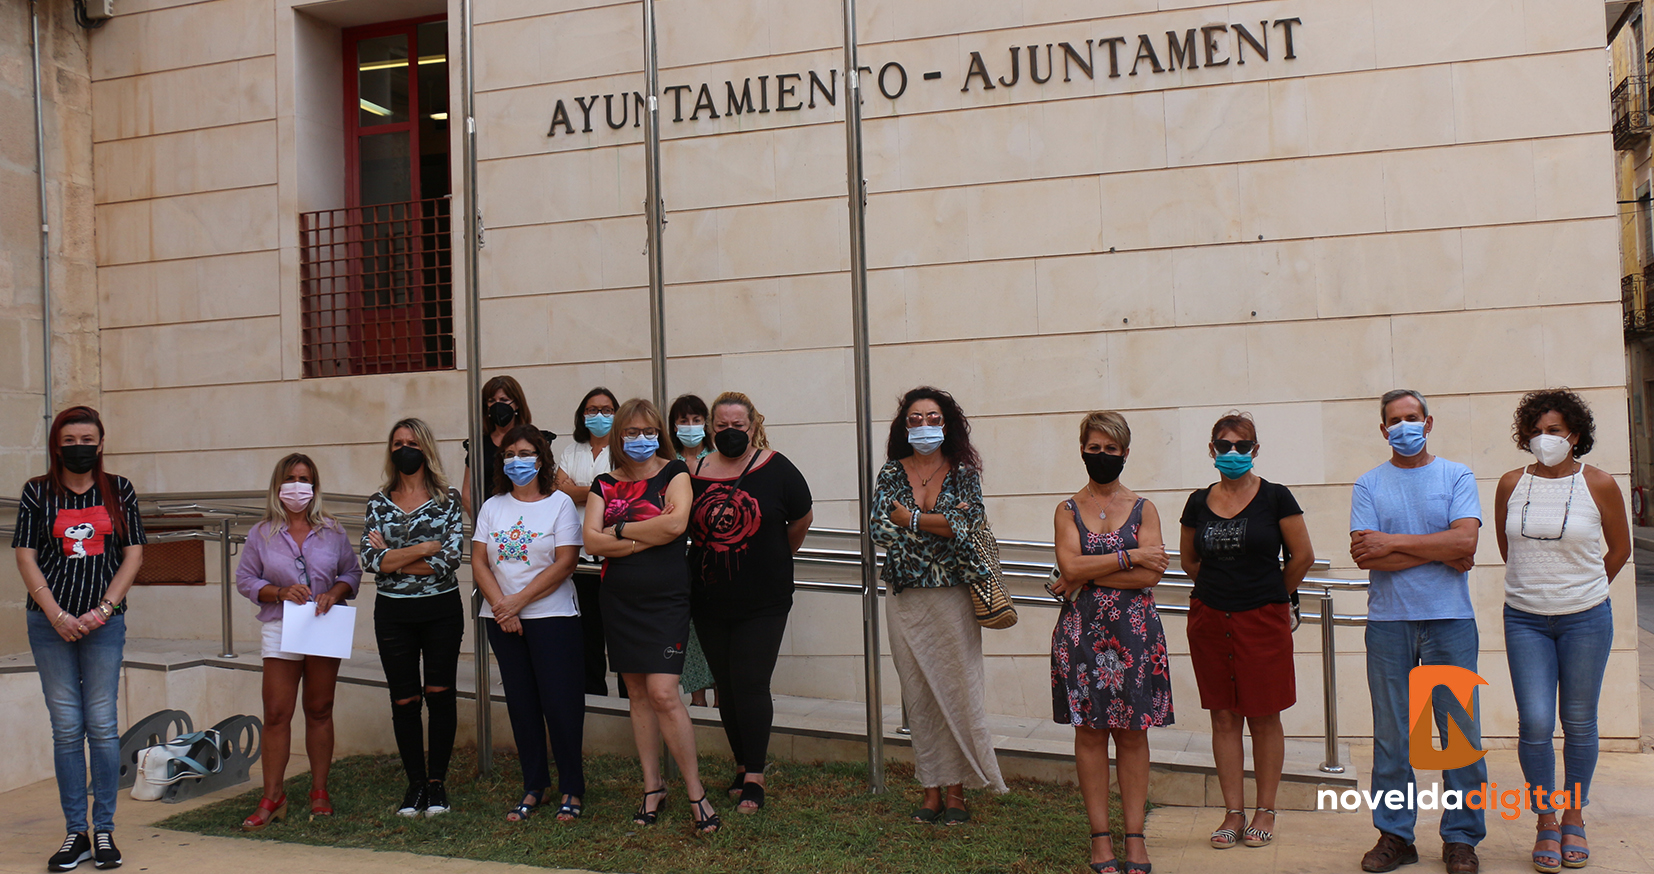 Minuto de silencio en los soportales del Ayuntamiento por la última víctima de violencia machista en la provincia de Alicante